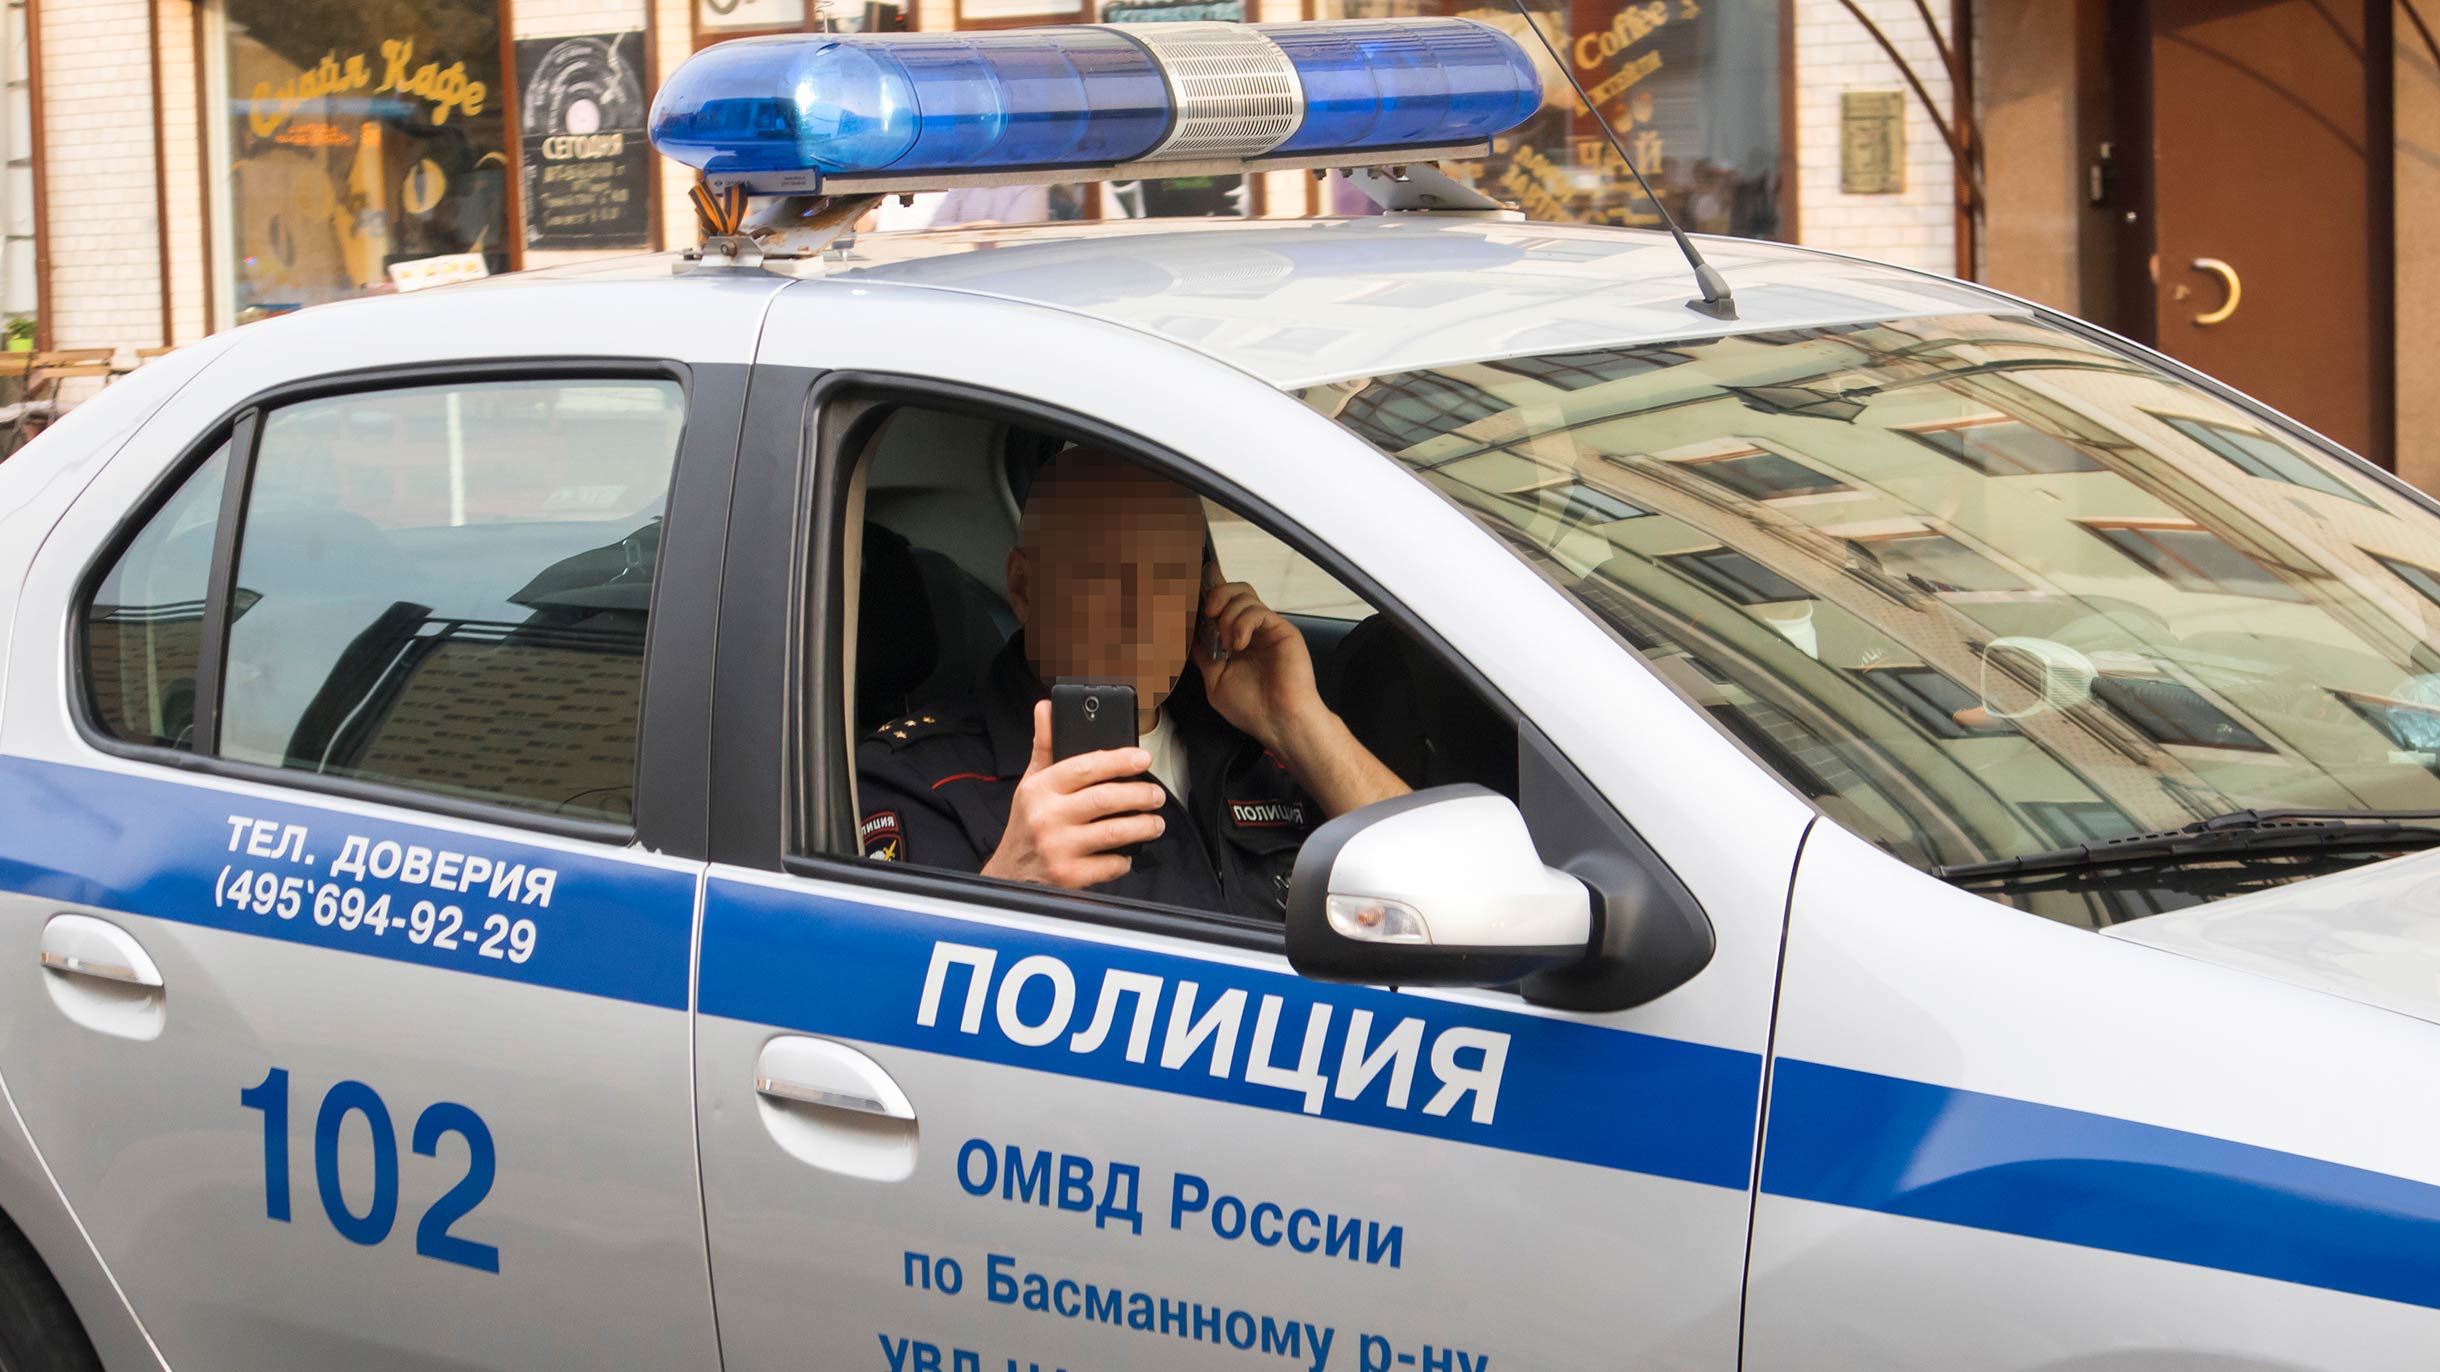 За пост в соцсетях с клеветой можно получить штраф до 5 млн рублей